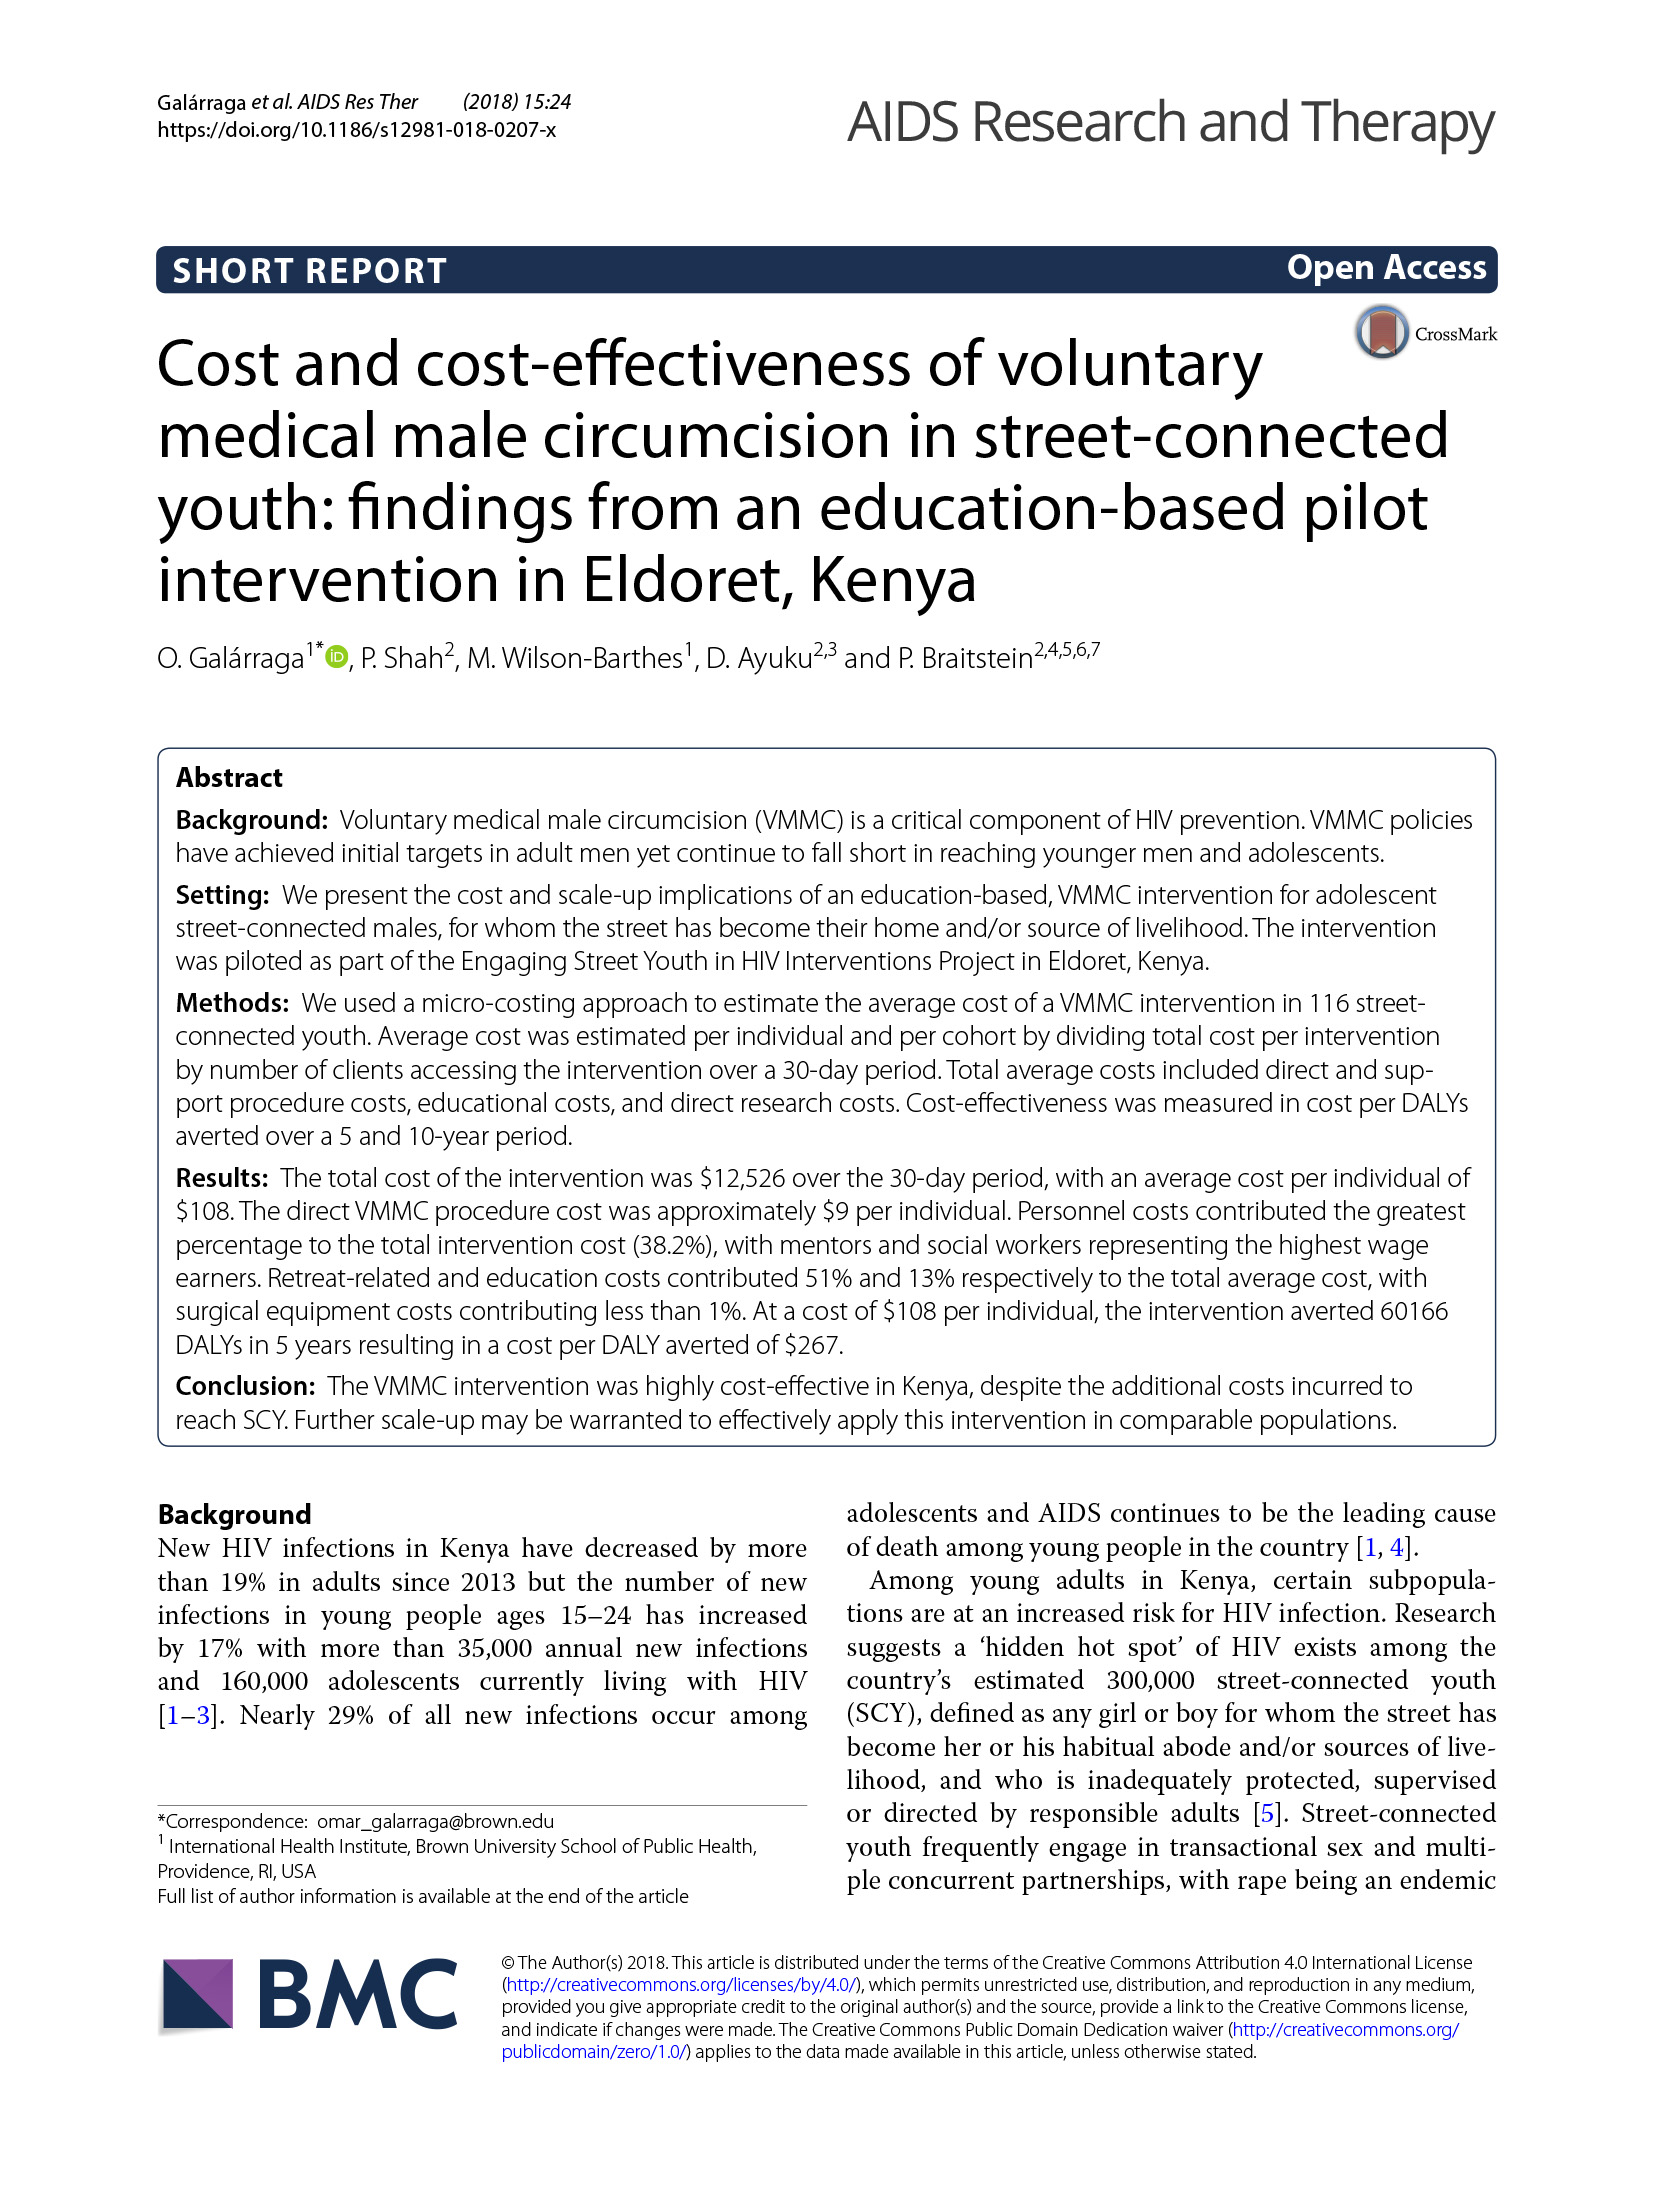 Coût et rentabilité de la circoncision médicale volontaire chez les jeunes de la rue : résultats d'une intervention pilote basée sur l'éducation à Eldoret, Kenya - cover